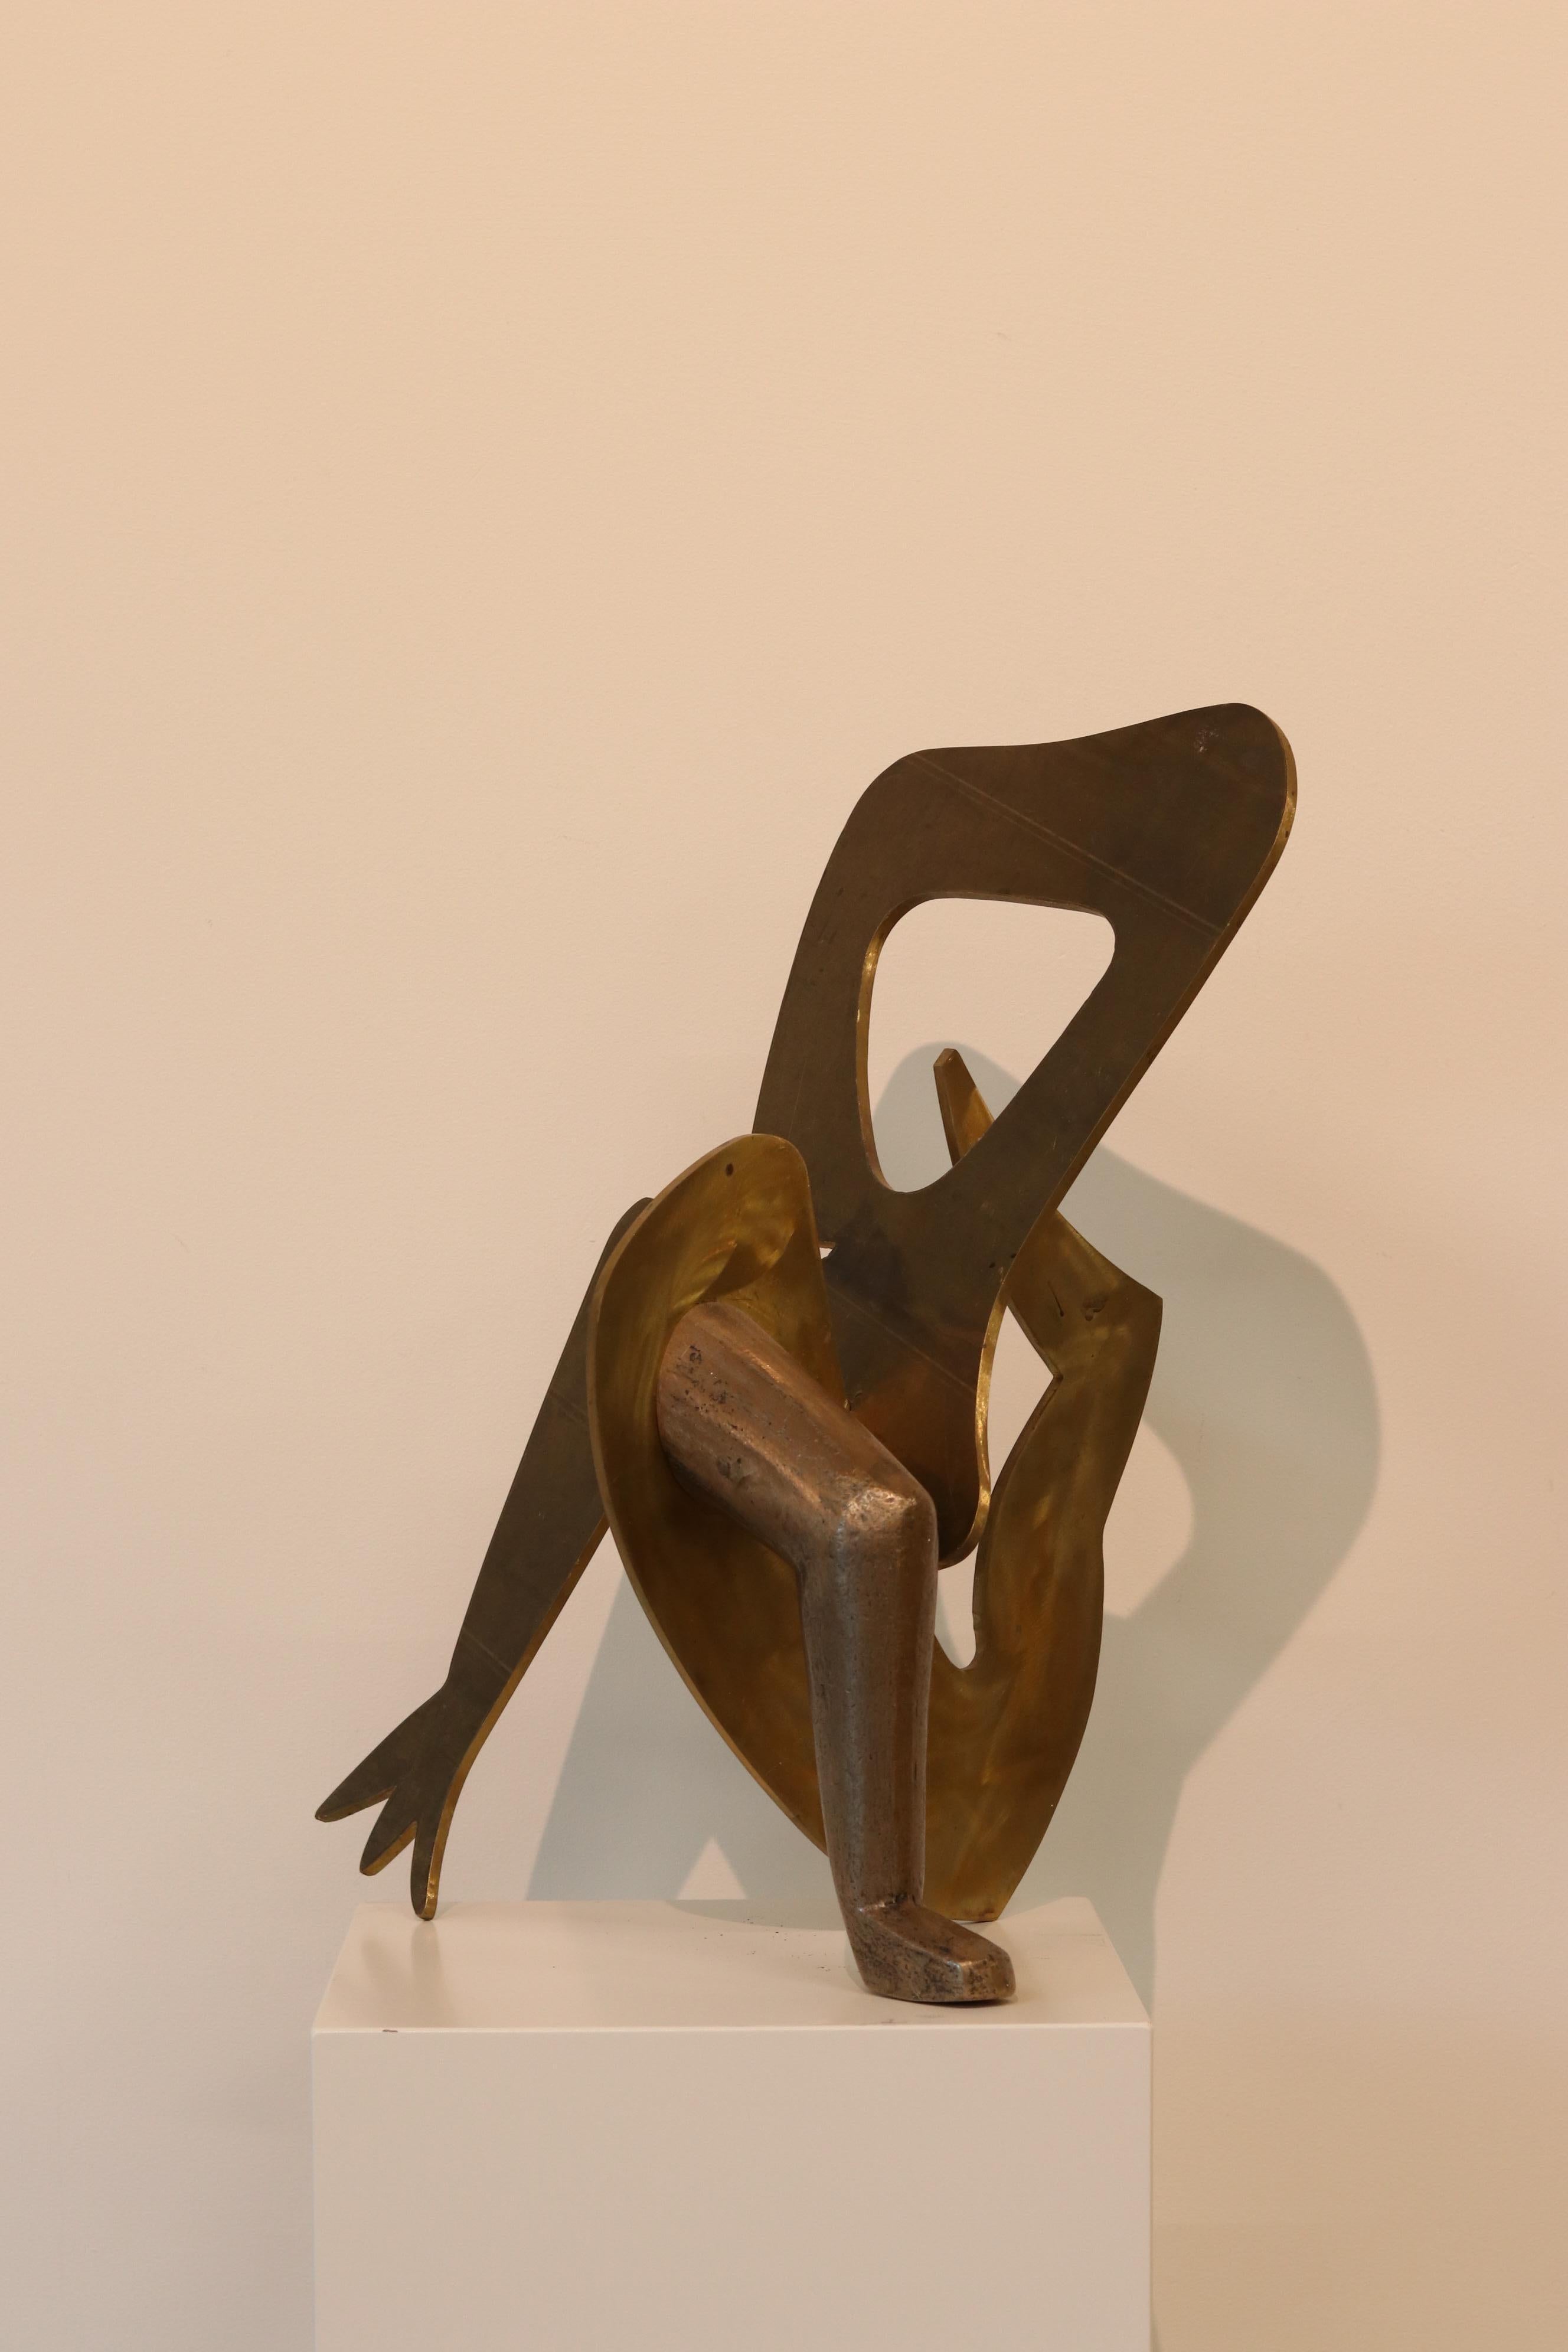 Cette sculpture de l'artiste néerlandais Jan Wils est réalisée en laiton.

Jan Wils est un artiste né dans la ville d'Eindhoven, aux Pays-Bas. Aujourd'hui, il vit et travaille toujours à Eindhoven.  

Jan Wils à propos de ses sculptures : 